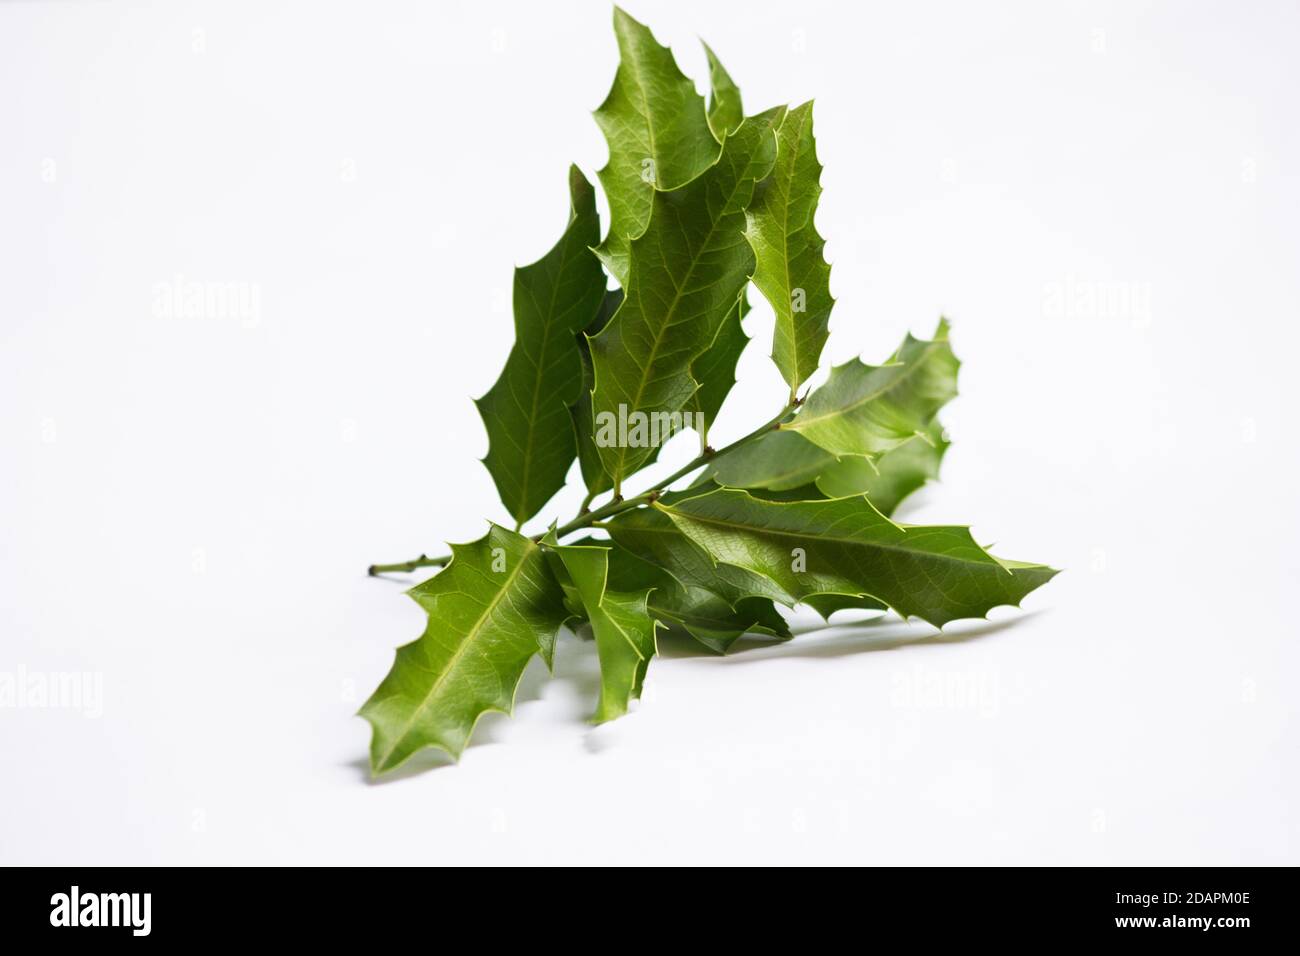 Maytenus ilicifolia medicinal plant isolated on white background Stock Photo